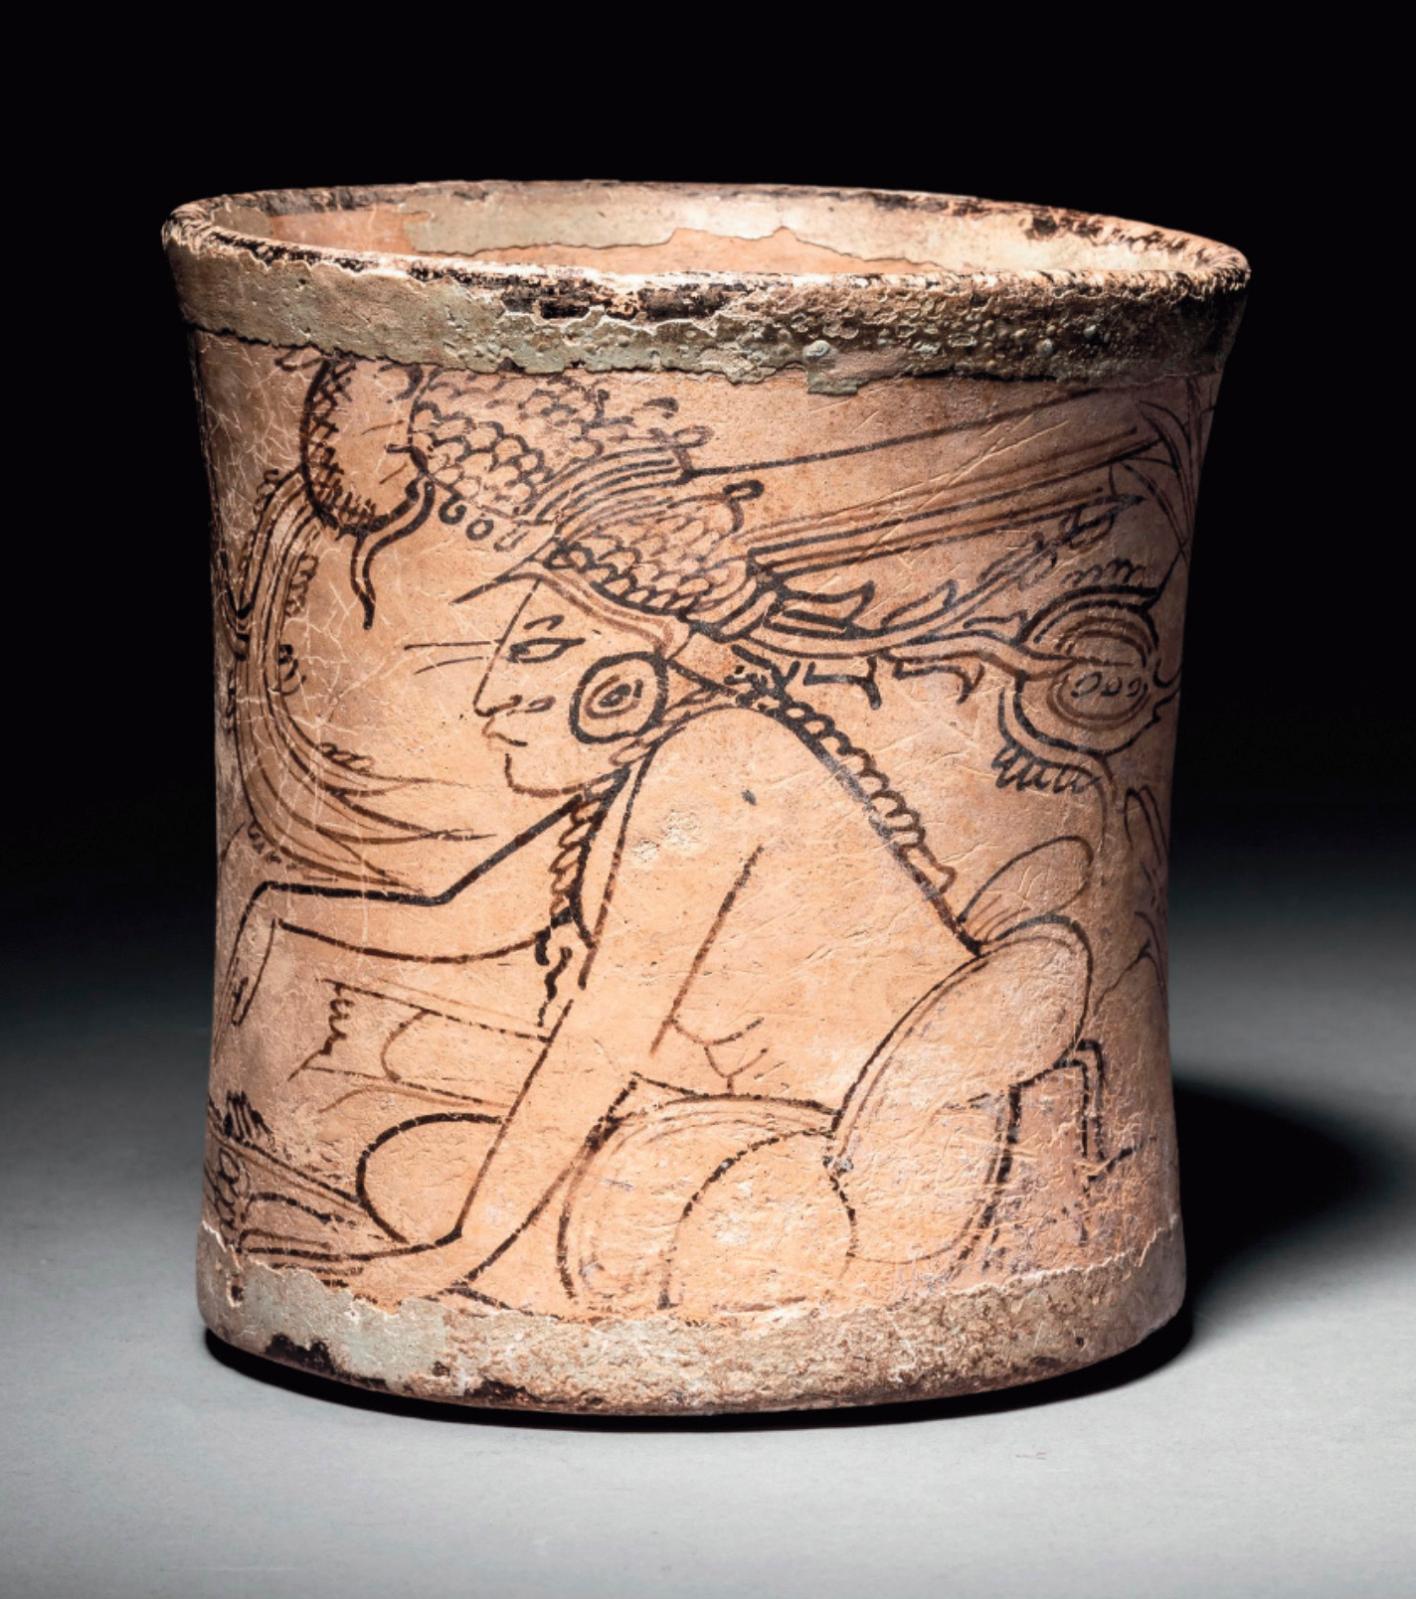 Un vase maya de style codex